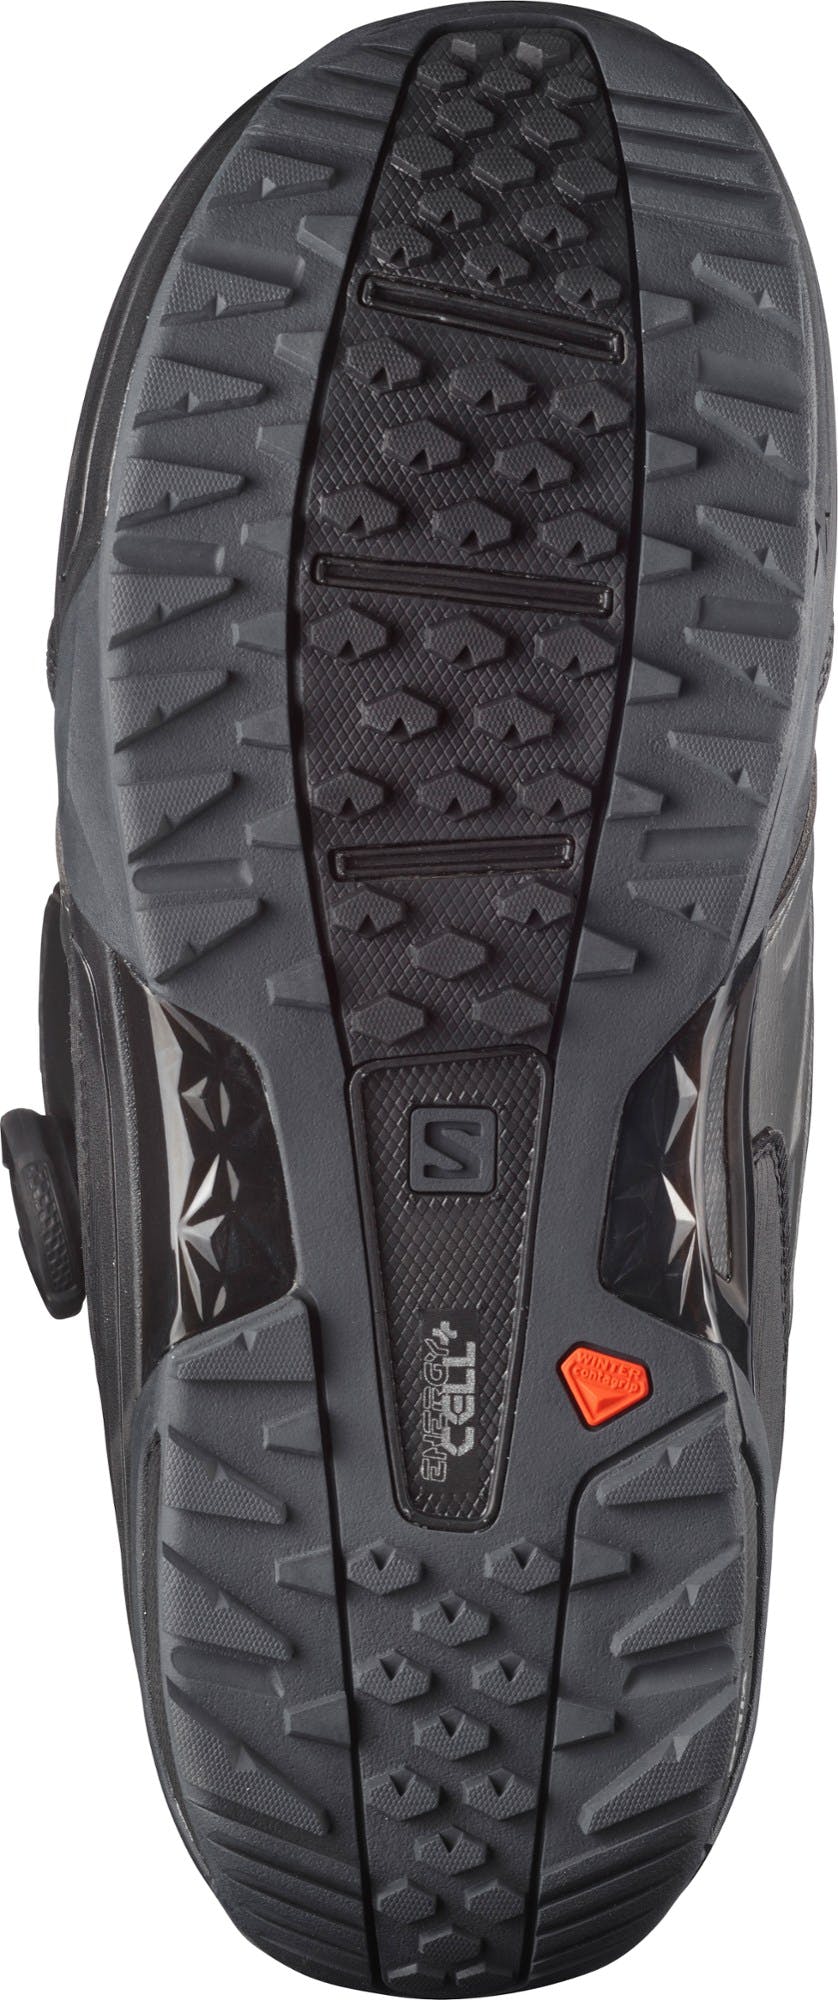 Salomon Synapse Focus BOA Snowboard Boots · 2021